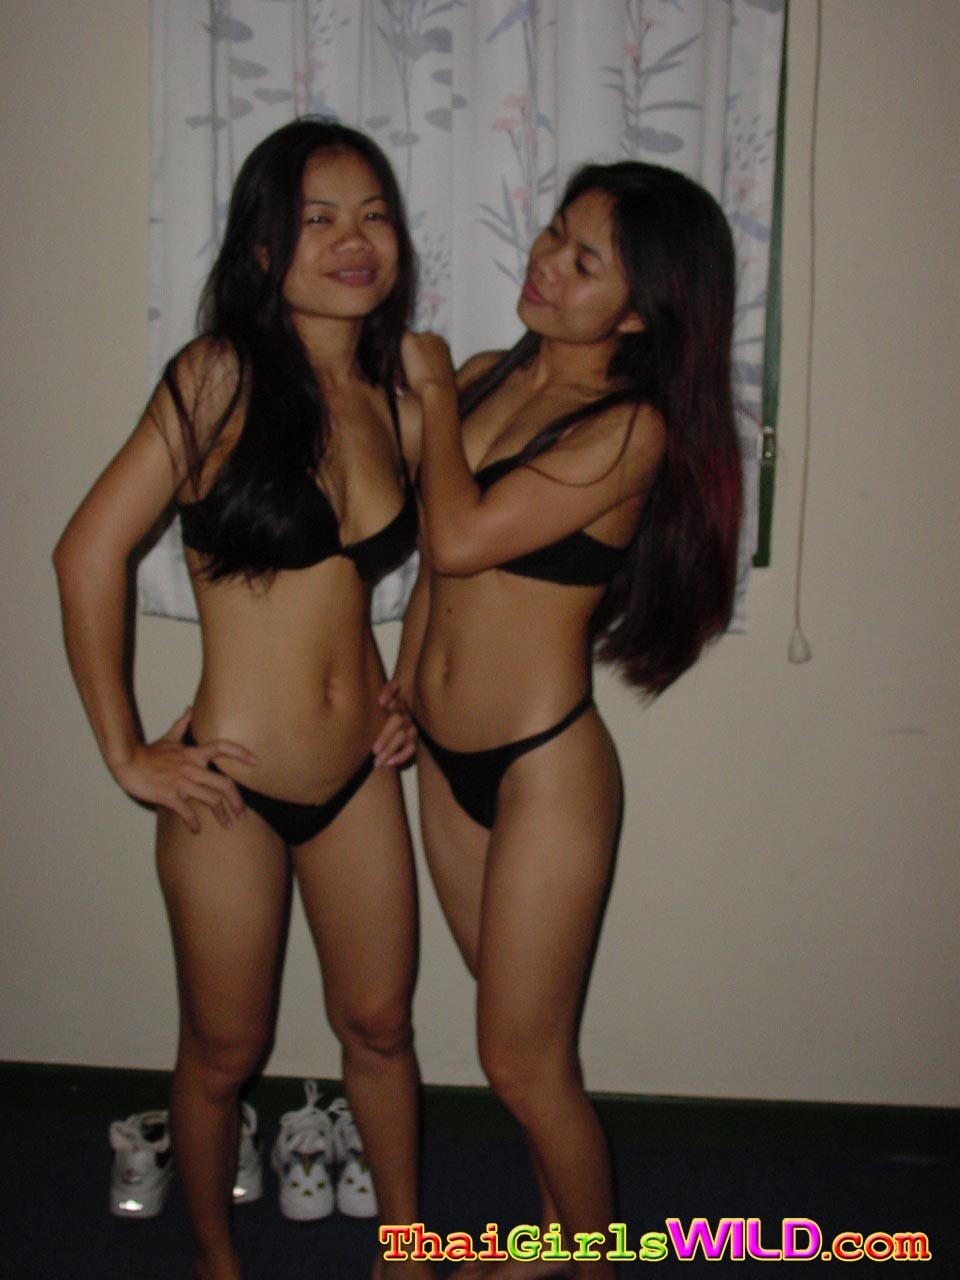 Des amies thaïlandaises amoureuses exposant leurs corps sales comme des salopes asiatiques.
 #69849251